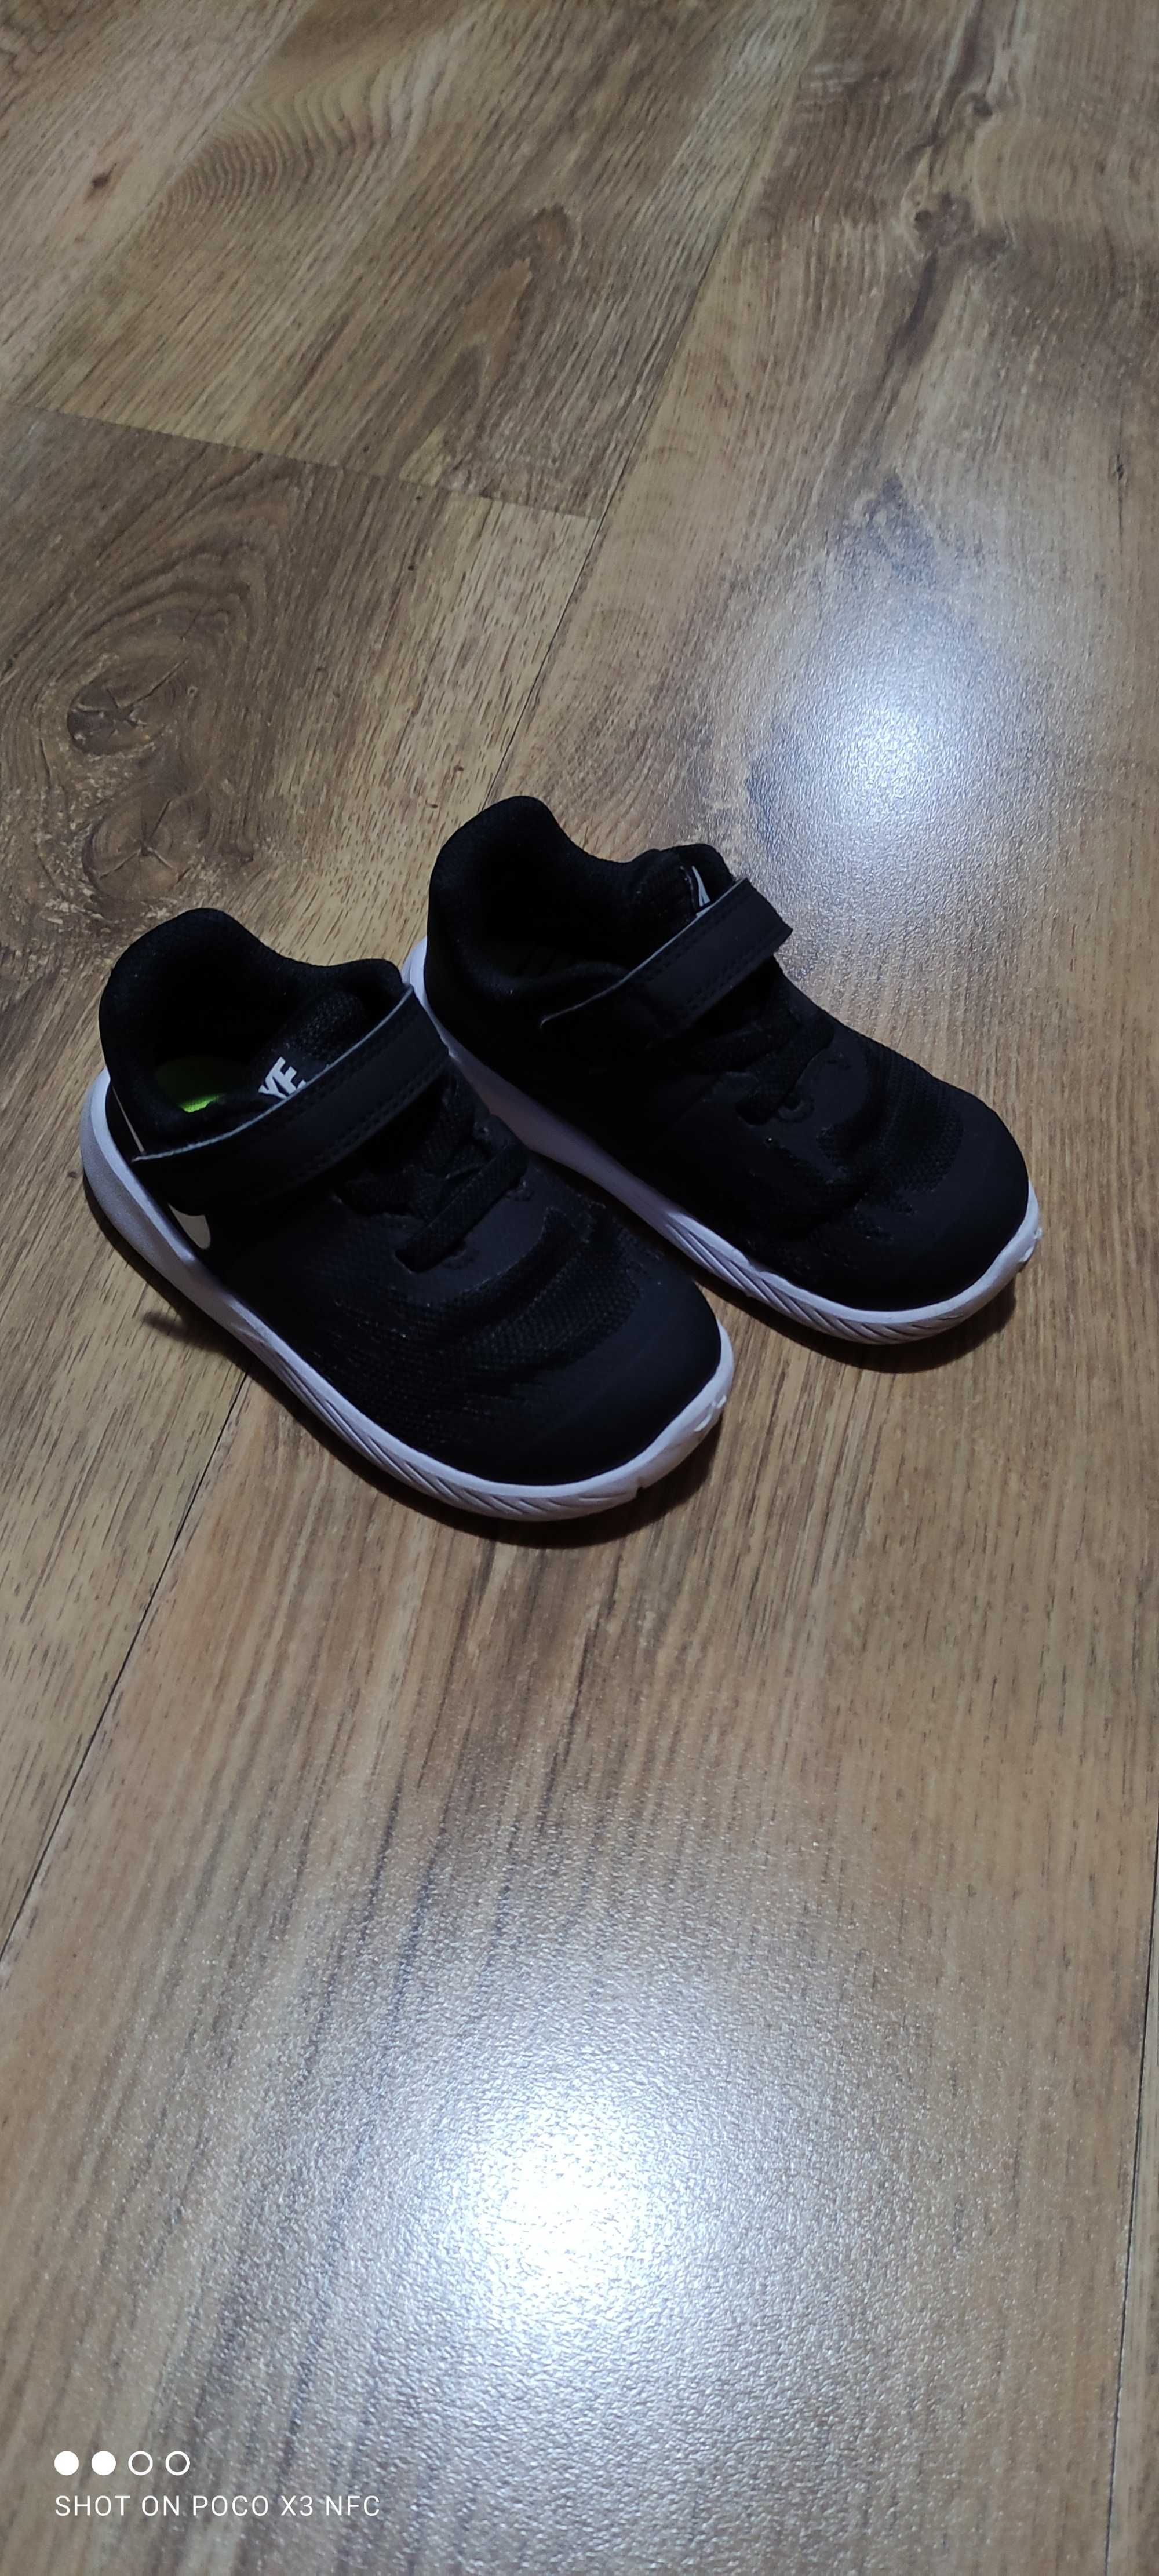 Buty dziecięce Nike rozm EUR 22, 12 cm, czarno-białe. Stan b dobry